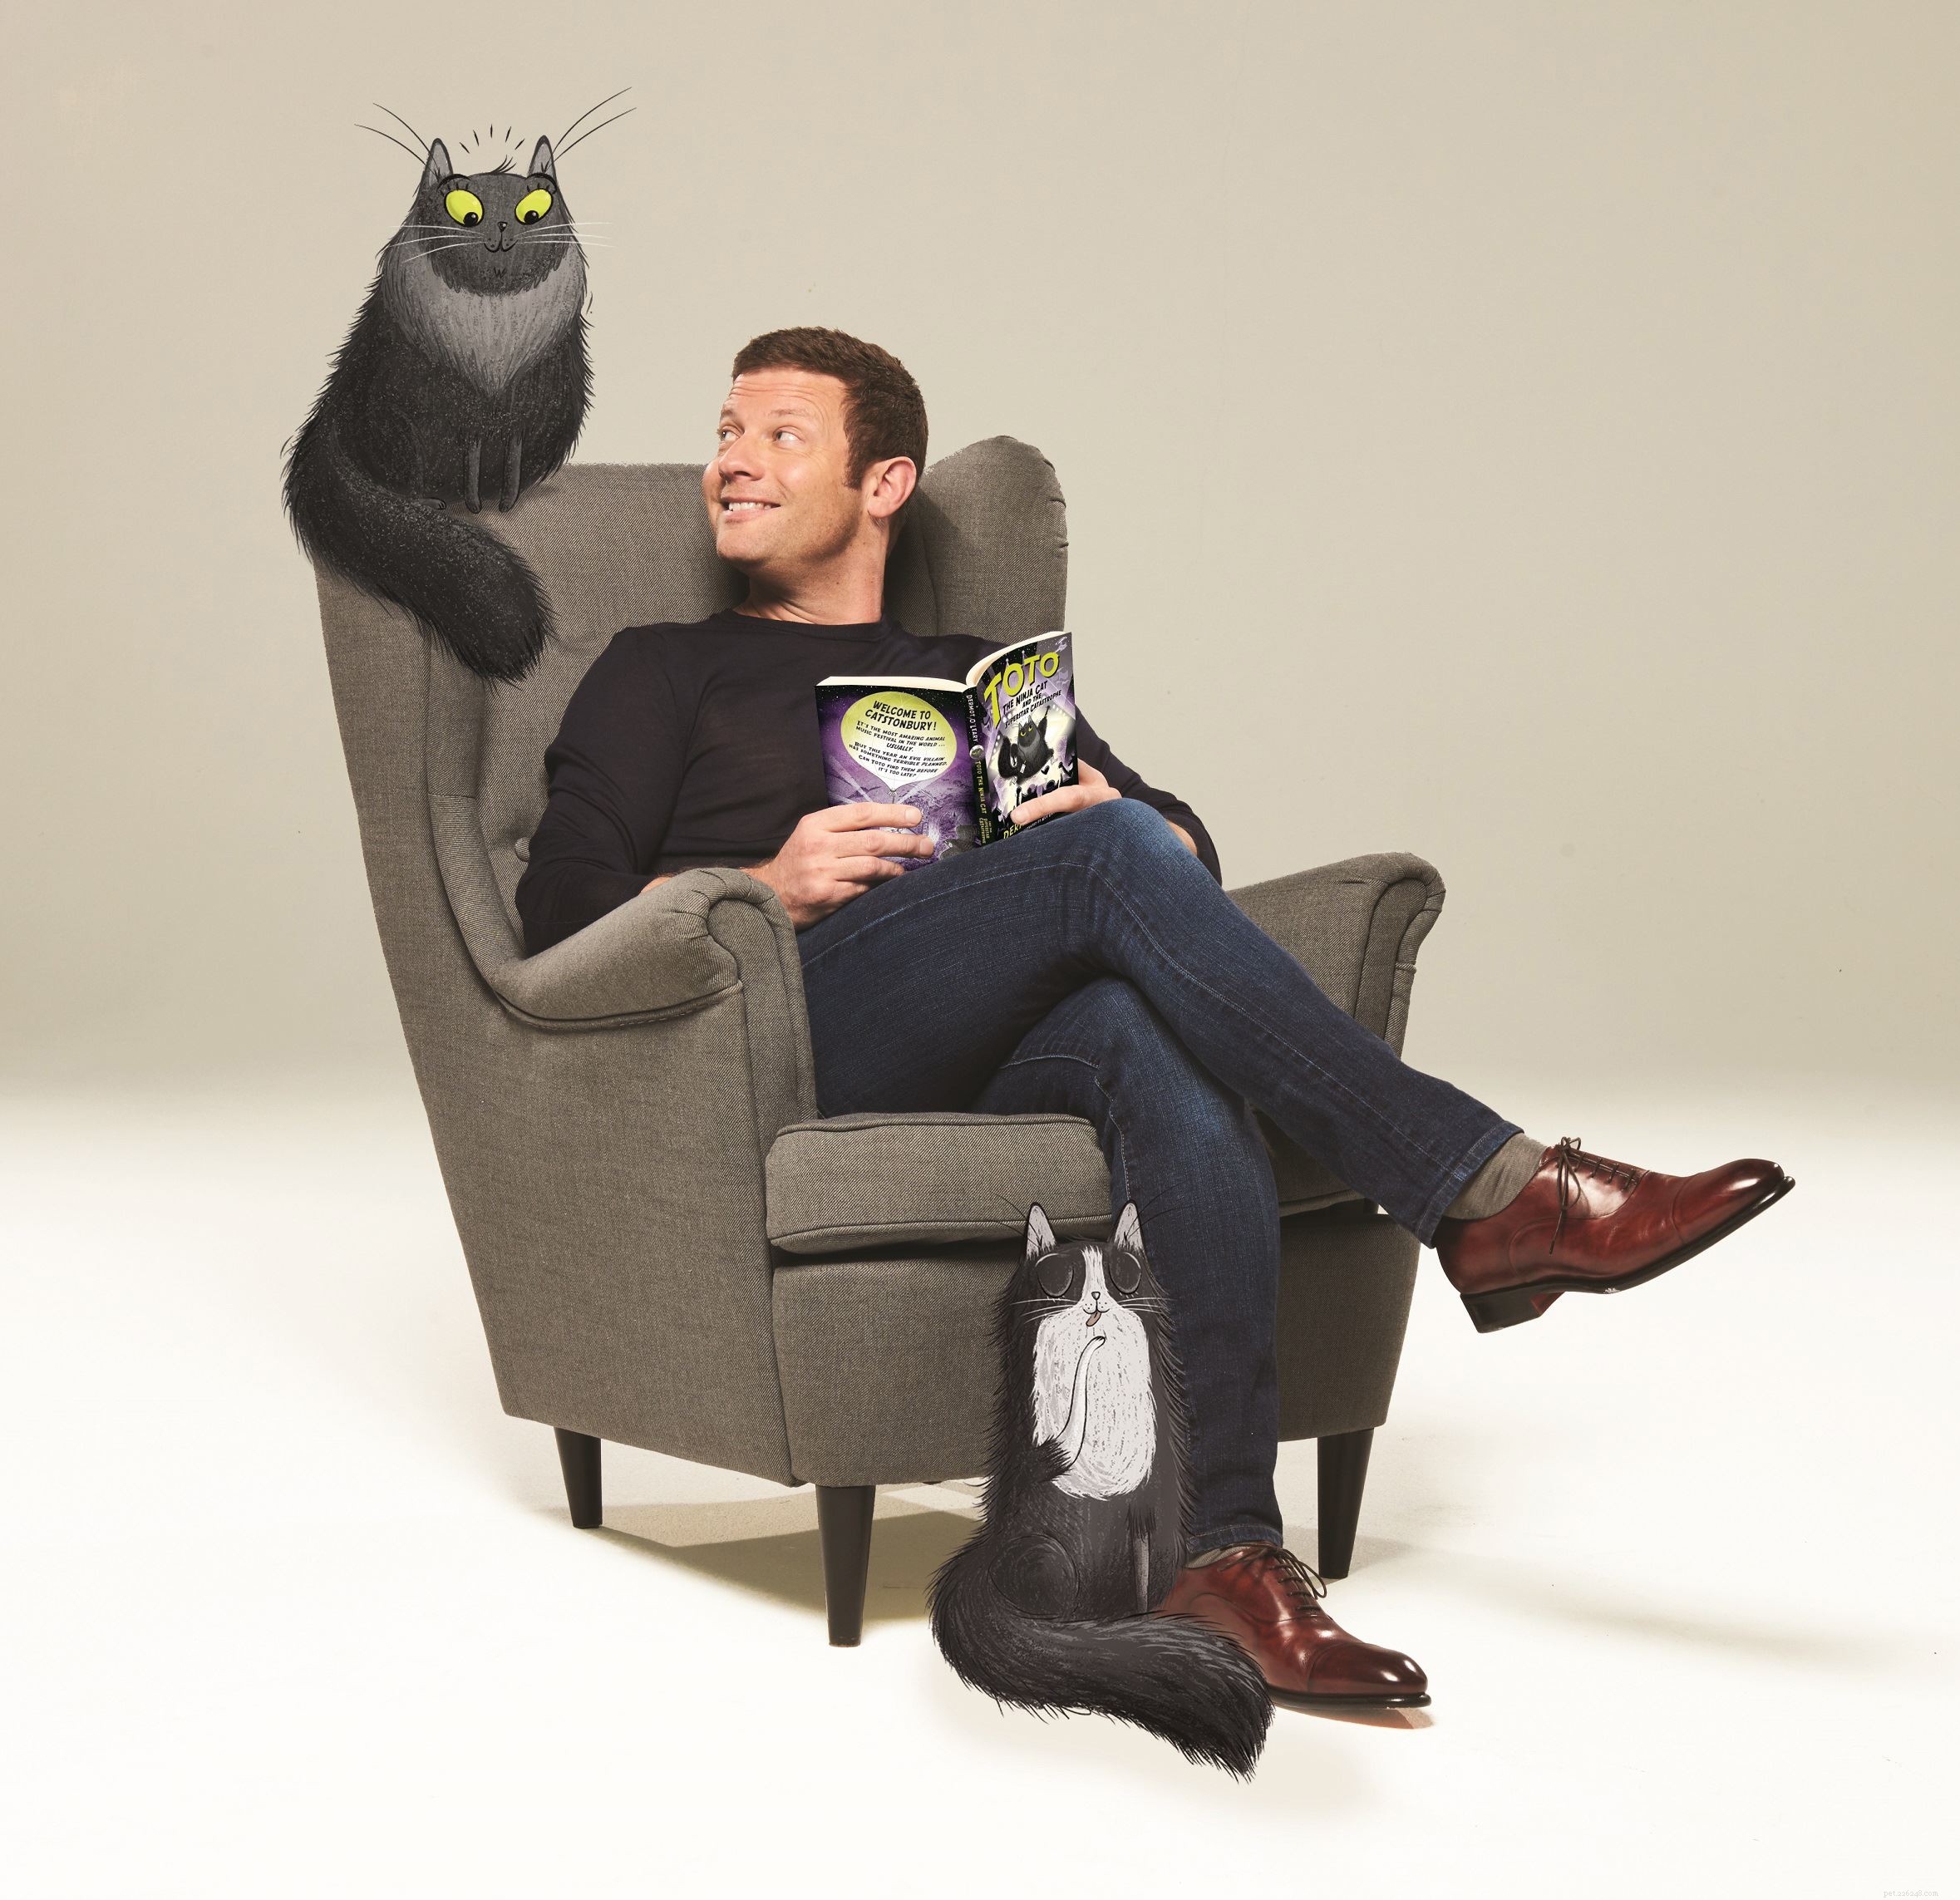 그의 새로운 Toto Ninja Cat 책 출시를 기념하기 위해 Dermot O Leary는 Cats Protection과 젊은 고양이 팬의 질문에 답합니다. 